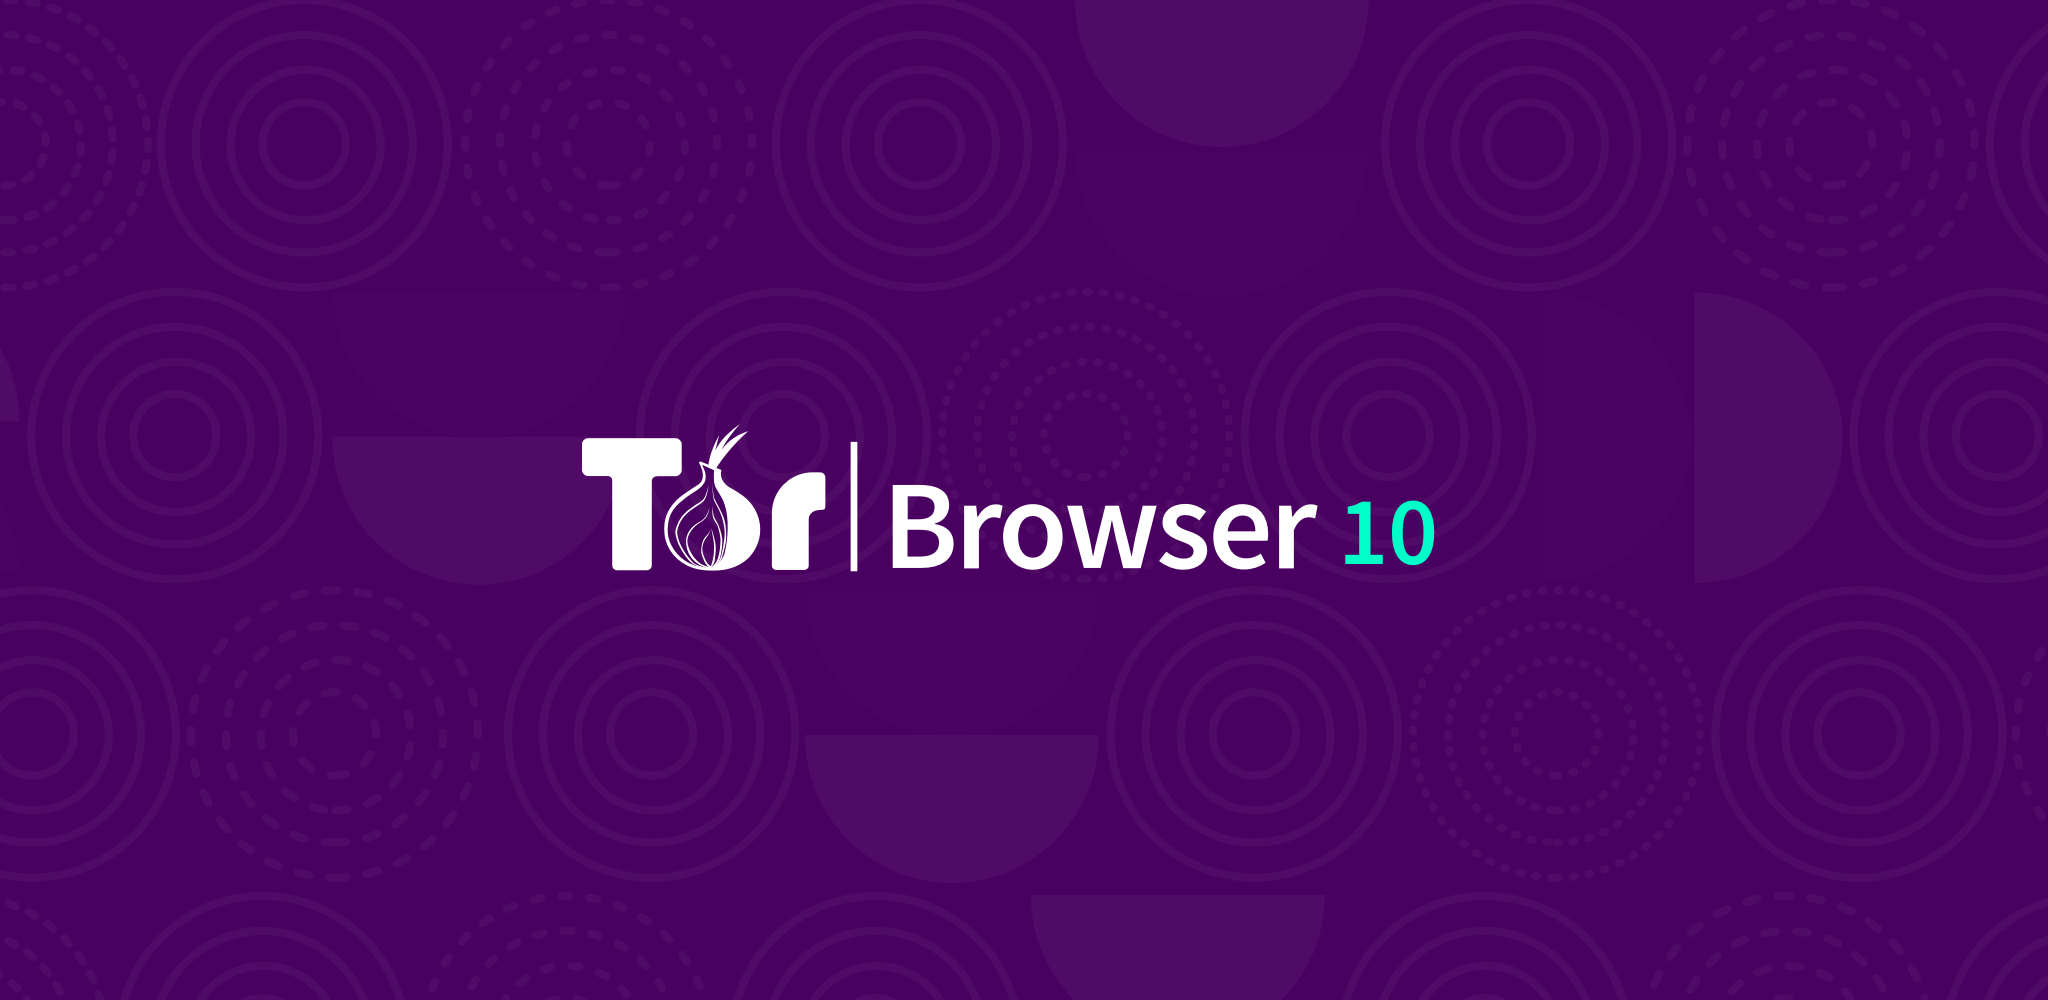 Tor browser for kali linux mega флеш плеер для тор браузер mega